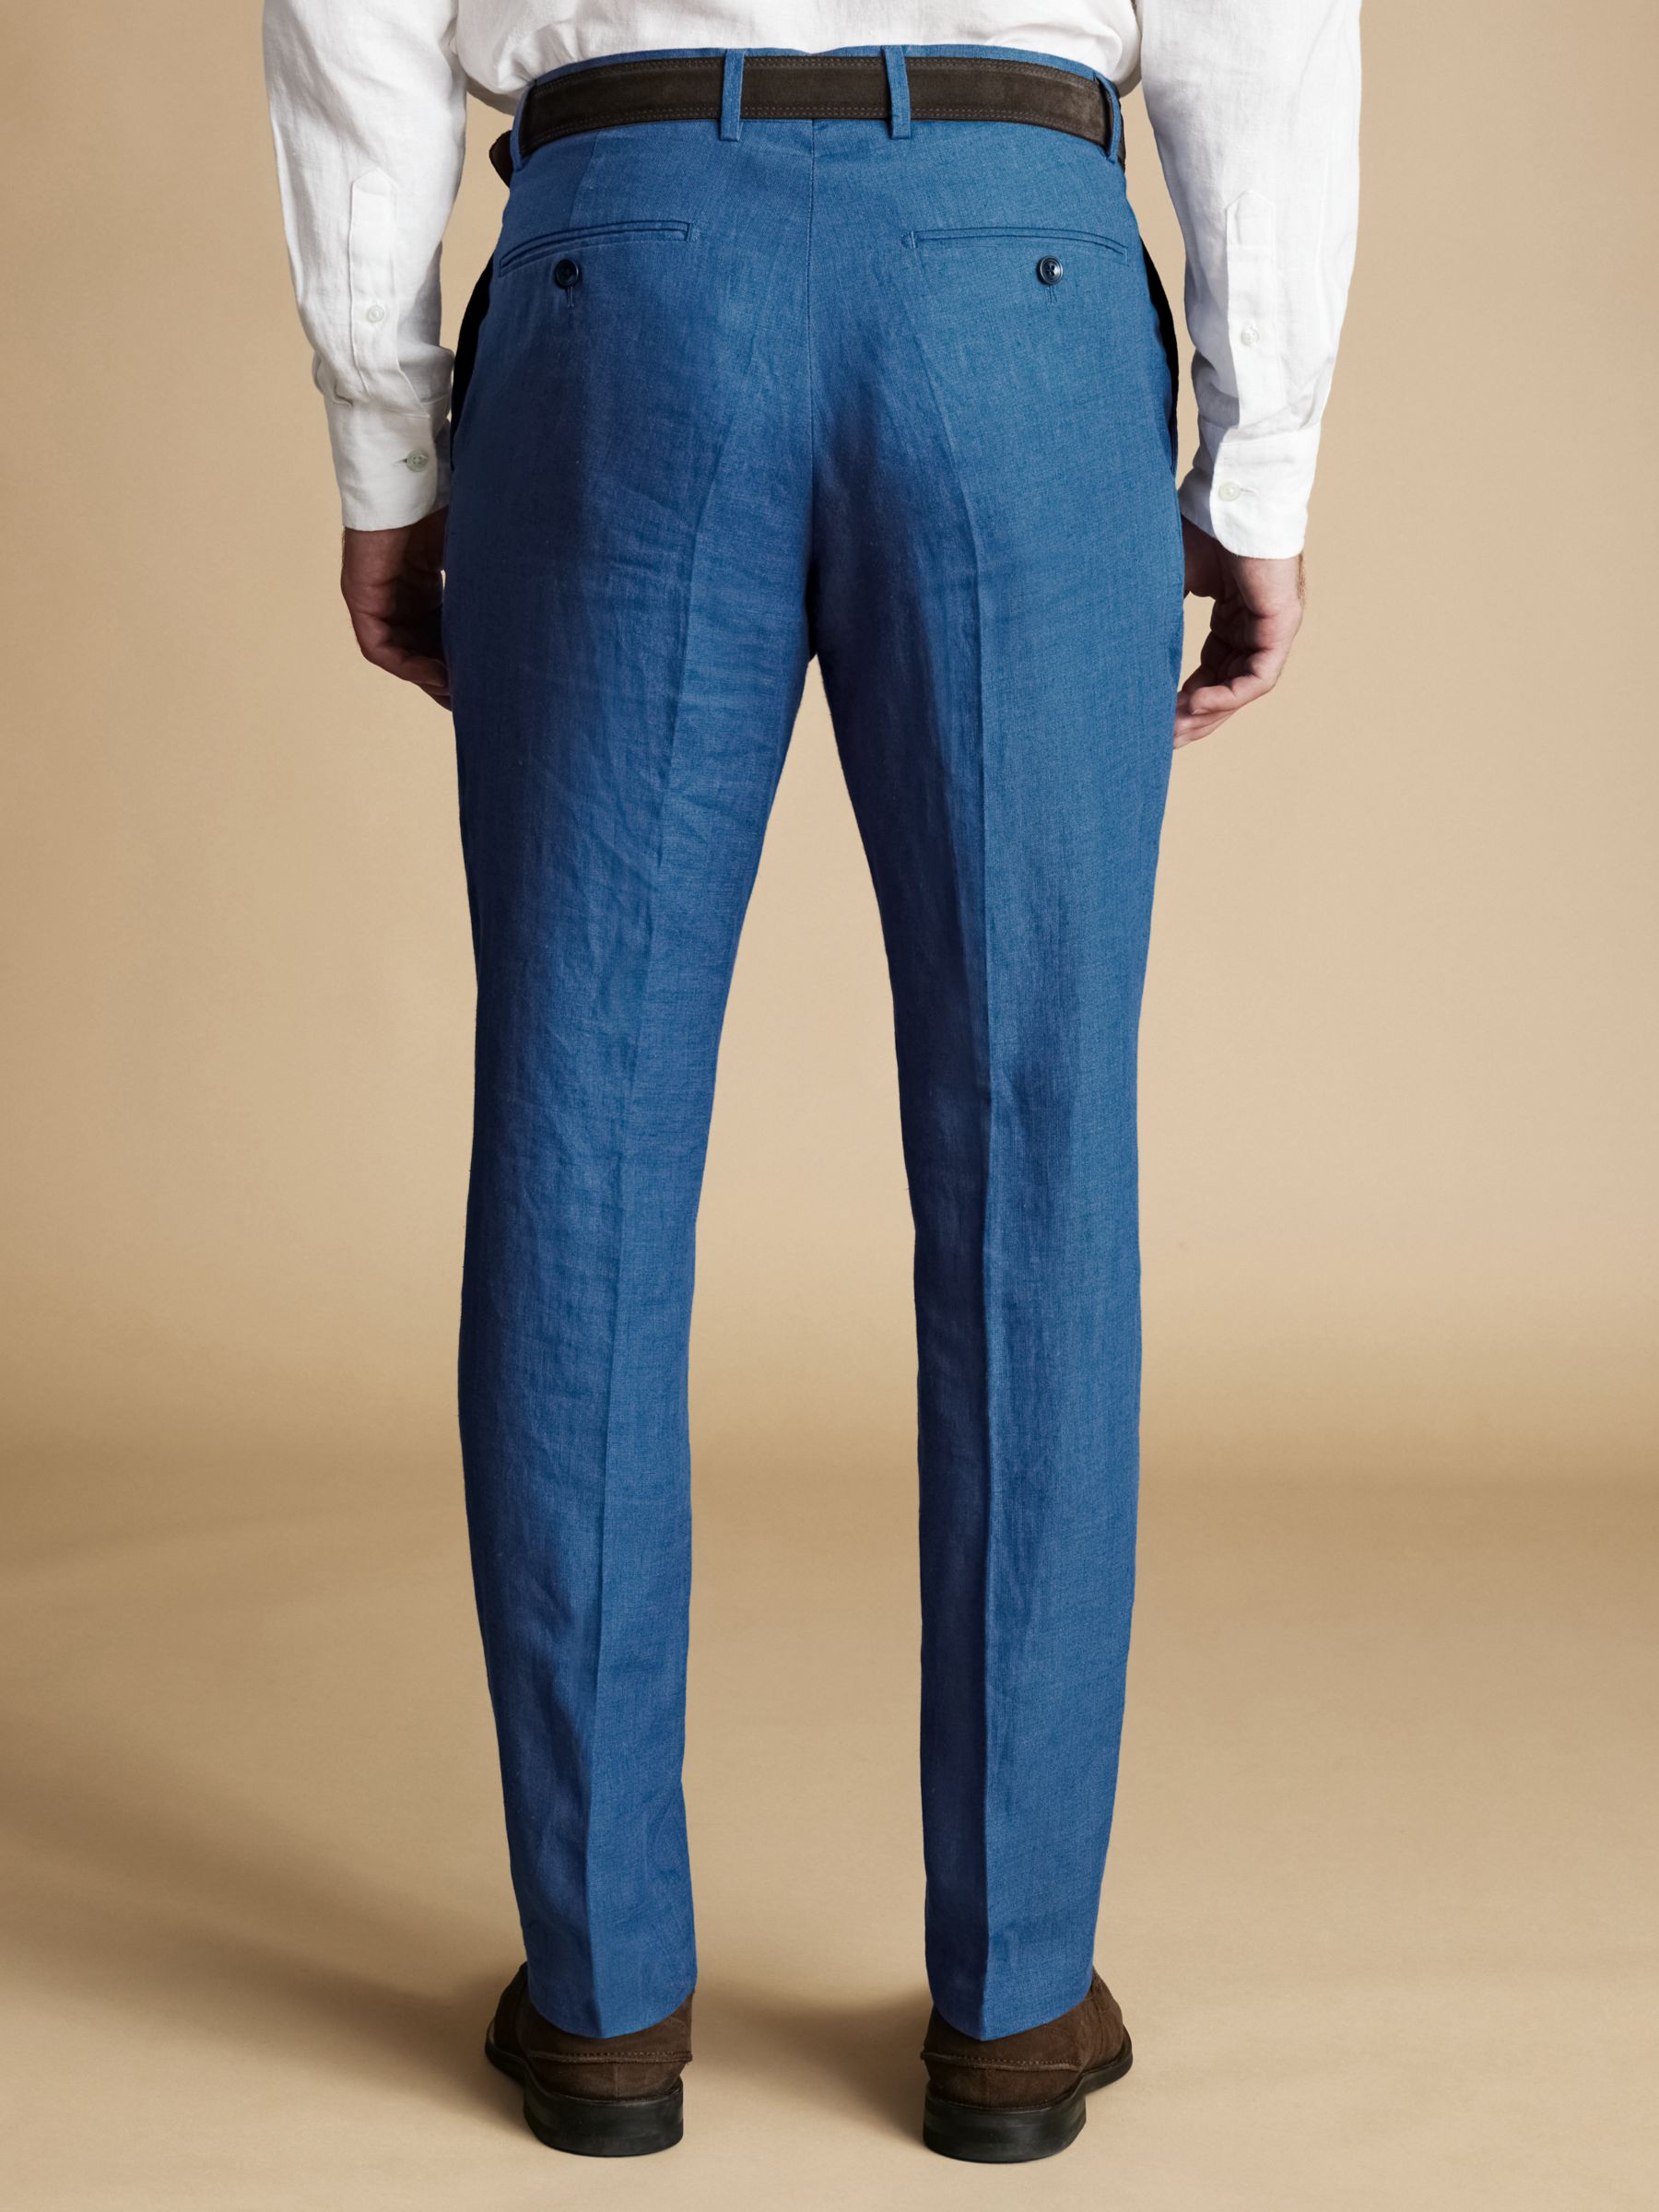 Charles Tyrwhitt Slim Fit Linen Trousers, Royal Blue, 34L